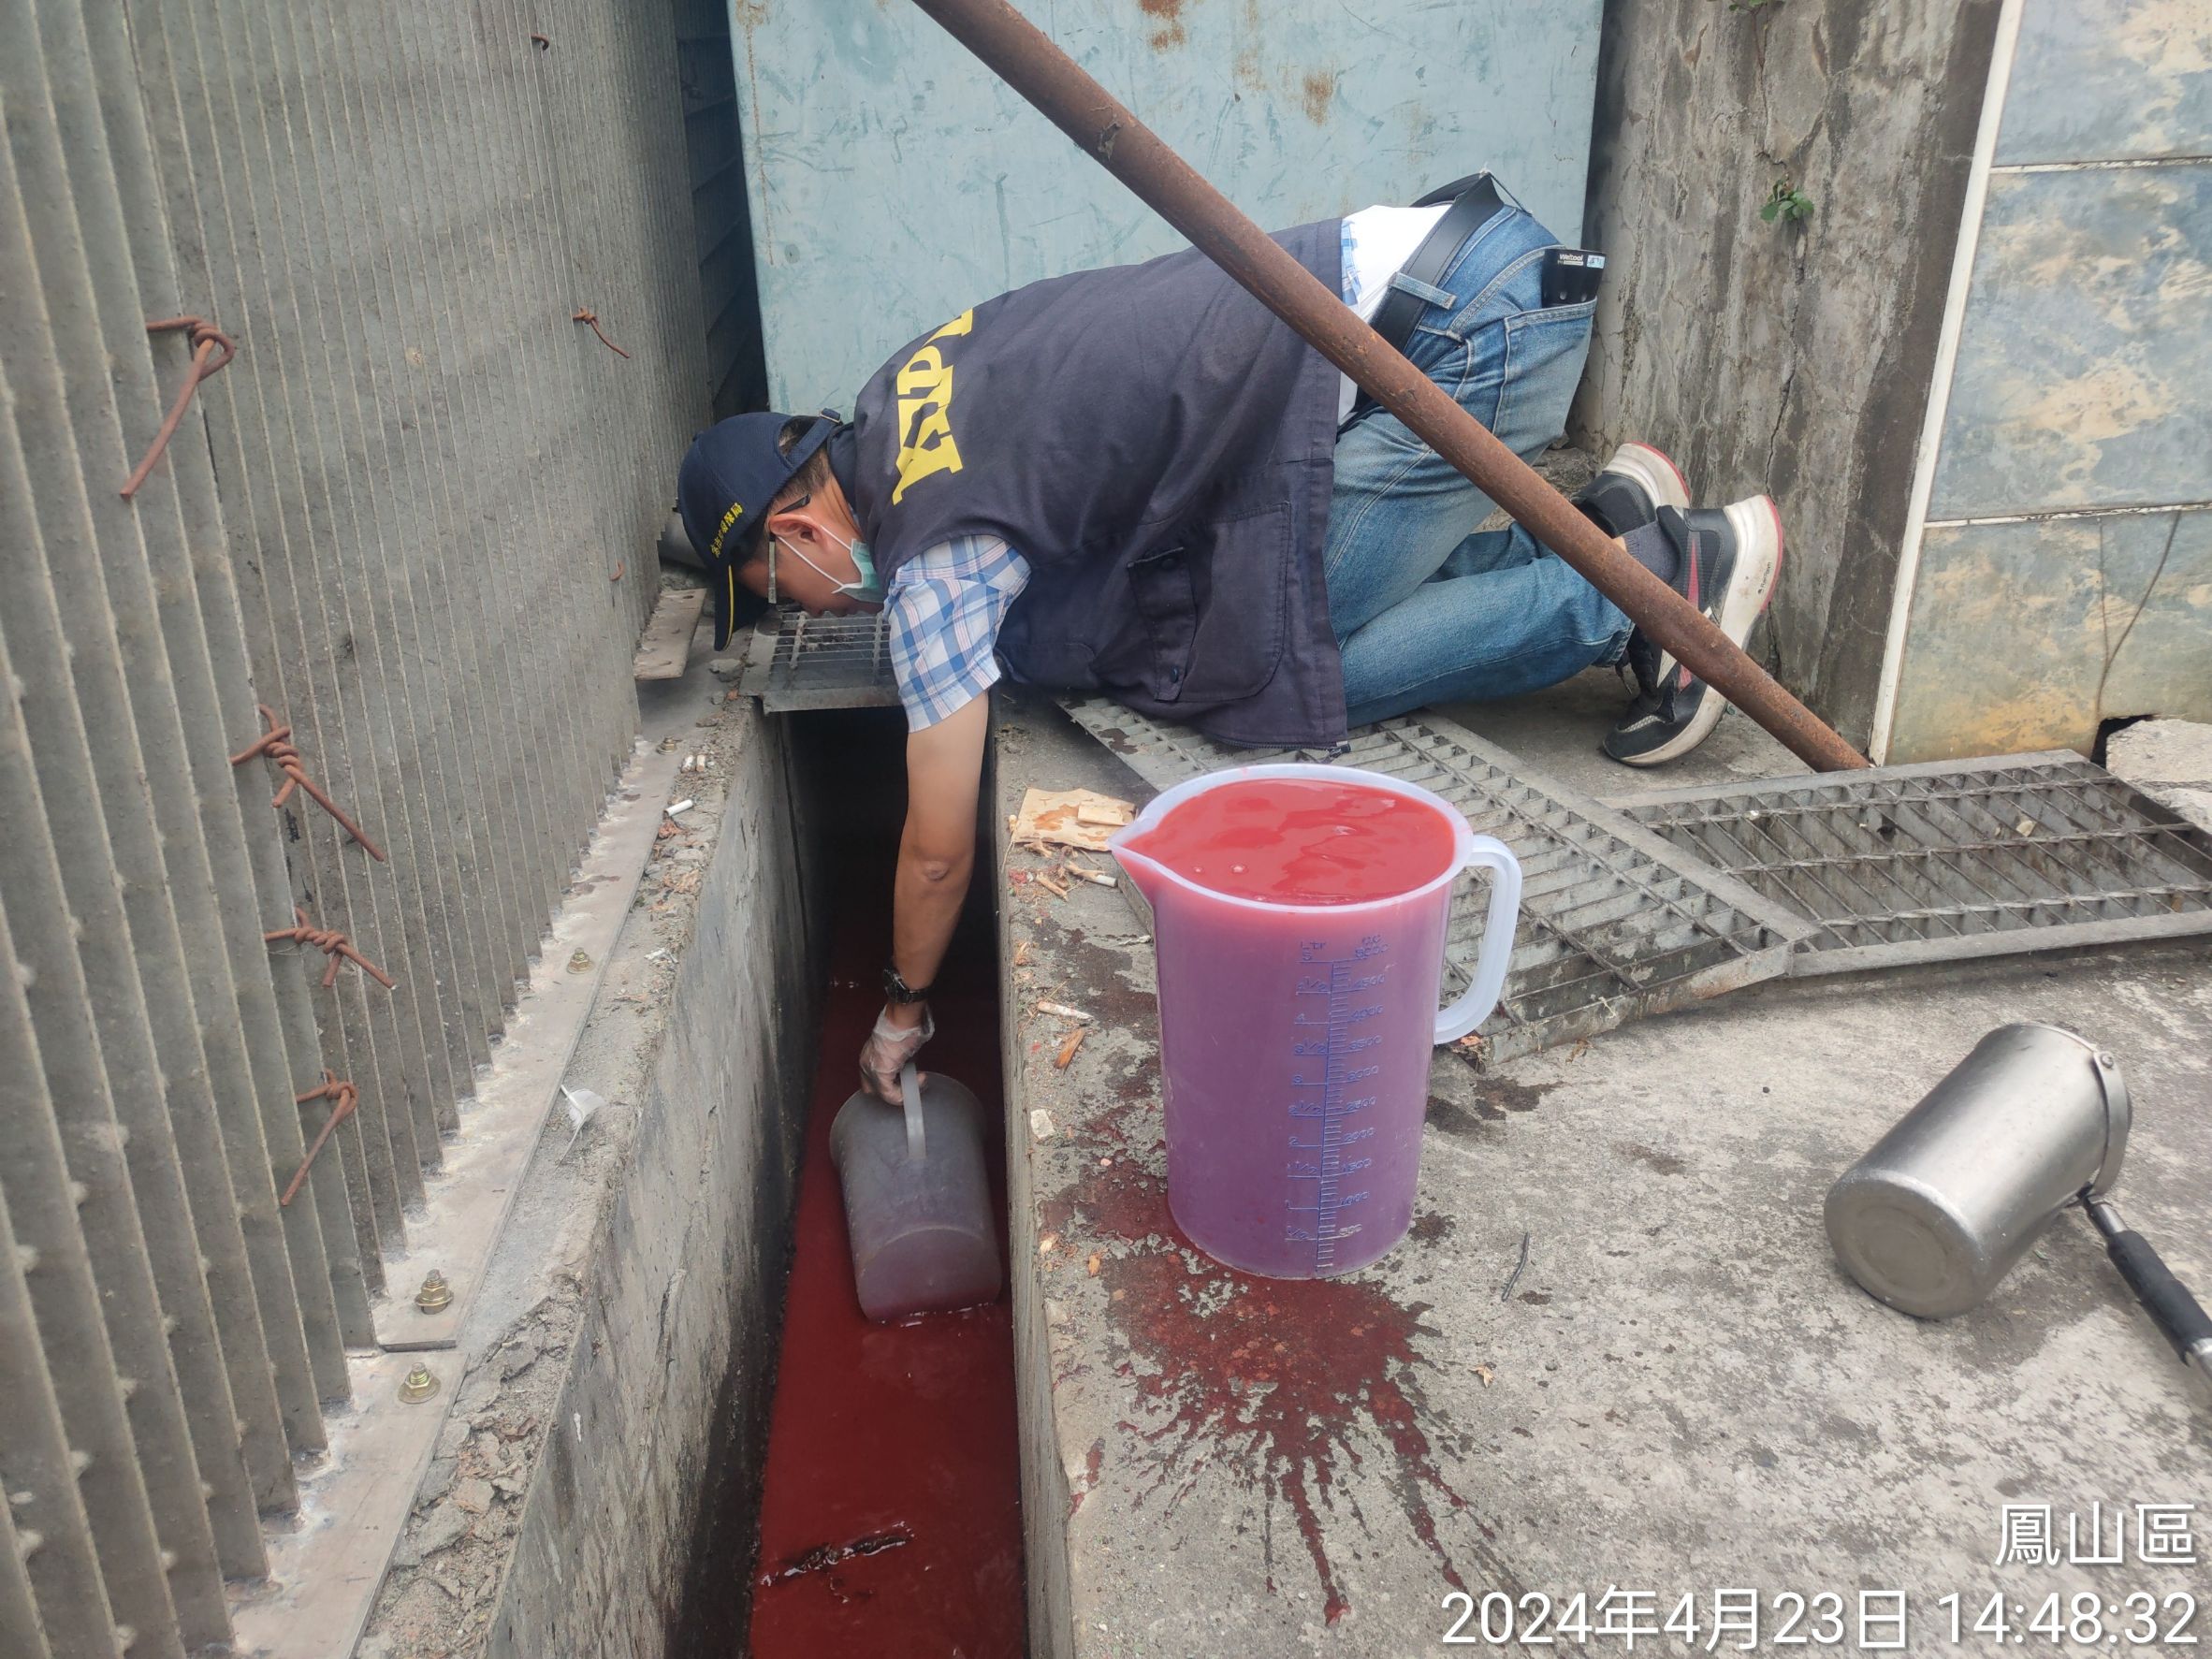 鳳山保健食品工廠偷排血紅色廢水 環保局依法開罰並限期改善